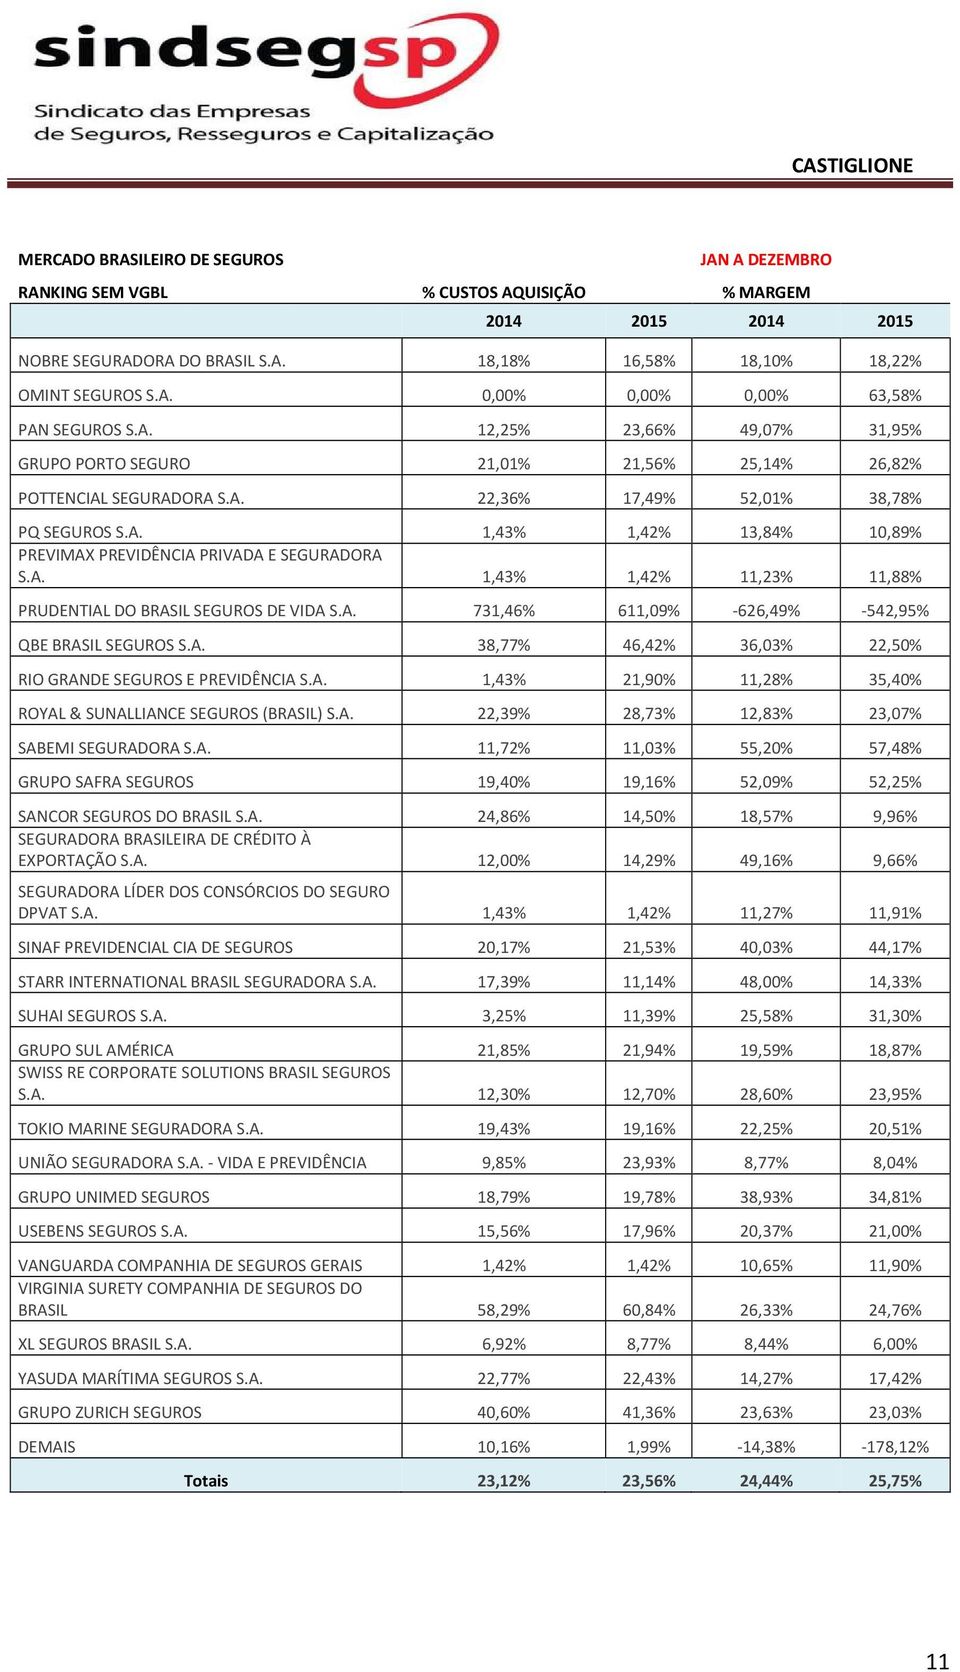 A. 38,77% 46,42% 36,03% 22,50% RIO GRANDE SEGUROS E PREVIDÊNCIA S.A. 1,43% 21,90% 11,28% 35,40% ROYAL & SUNALLIANCE SEGUROS (BRASIL) S.A. 22,39% 28,73% 12,83% 23,07% SABEMI SEGURADORA S.A. 11,72% 11,03% 55,20% 57,48% GRUPO SAFRA SEGUROS 19,40% 19,16% 52,09% 52,25% SANCOR SEGUROS DO BRASIL S.